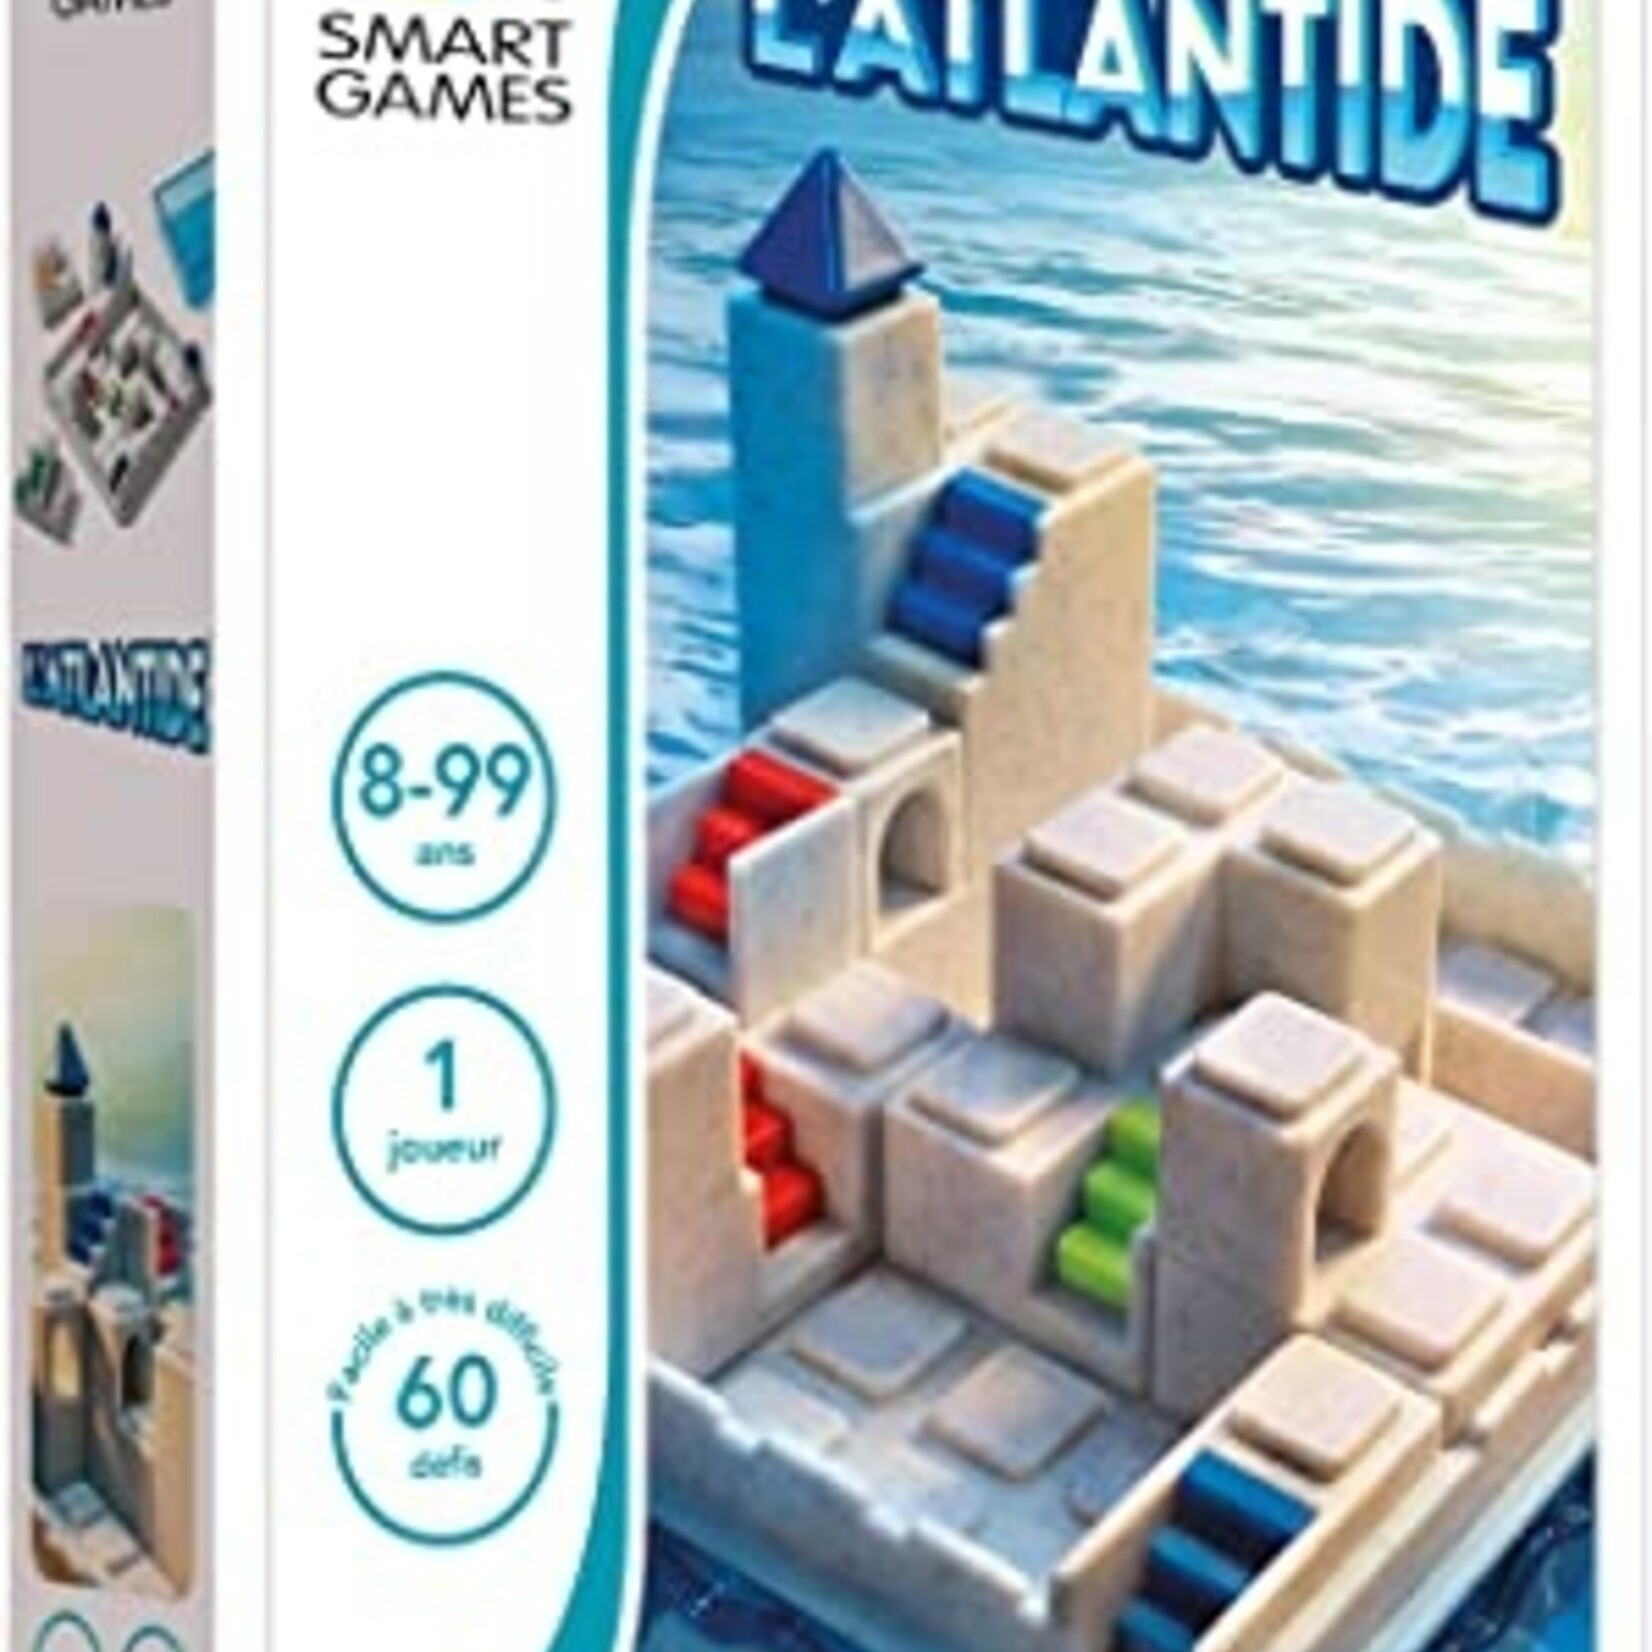 Smart Games SmartGames- L'Atlantide